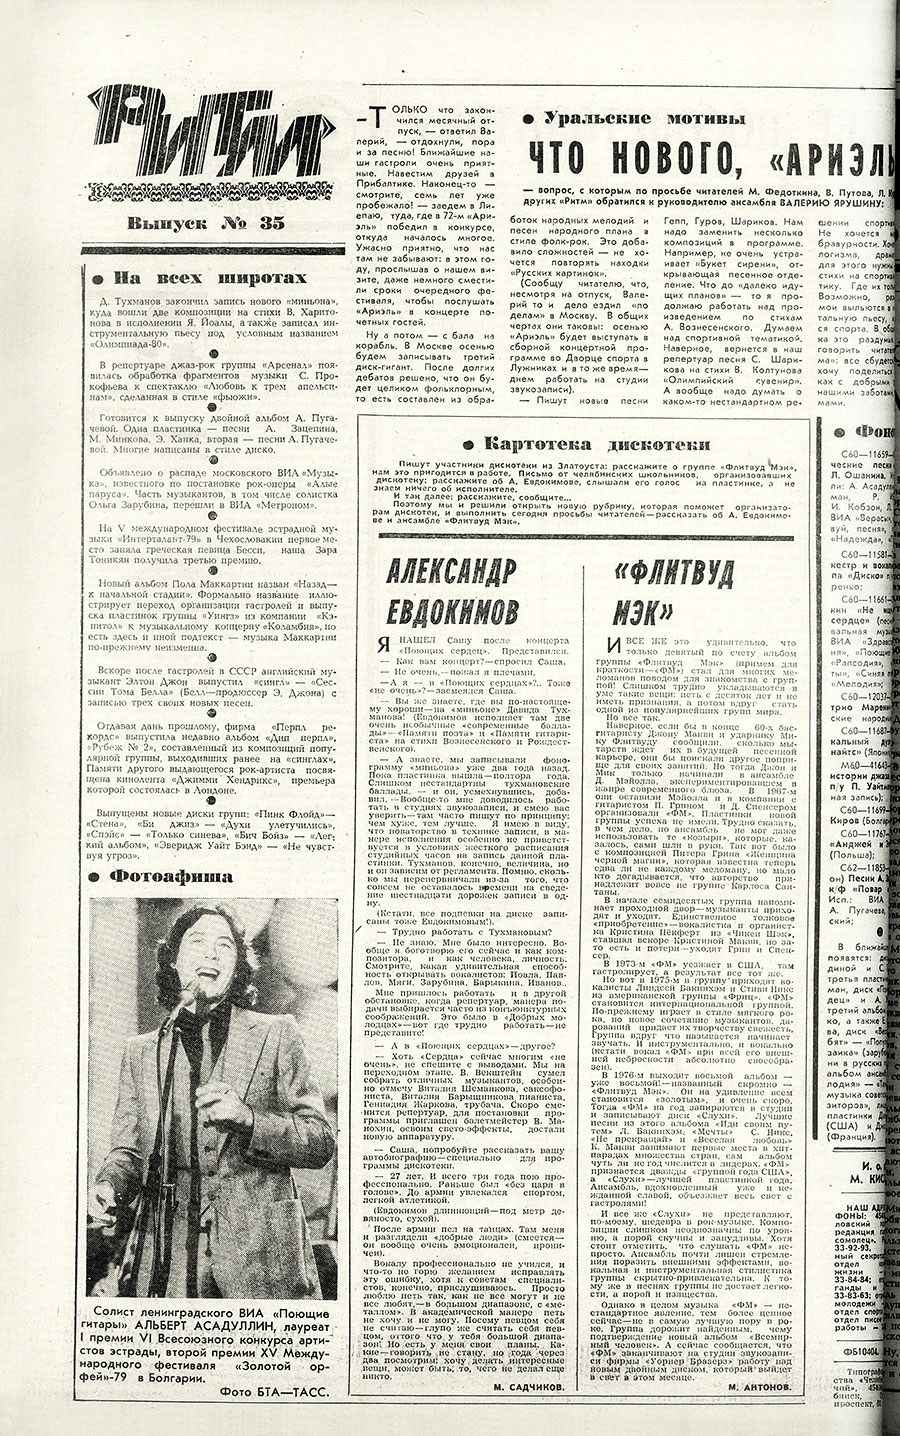 Заметка без названия про Пола Маккартни. Газета Комсомолец (Челябинск) от 9 августа 1979 года, стр. 4